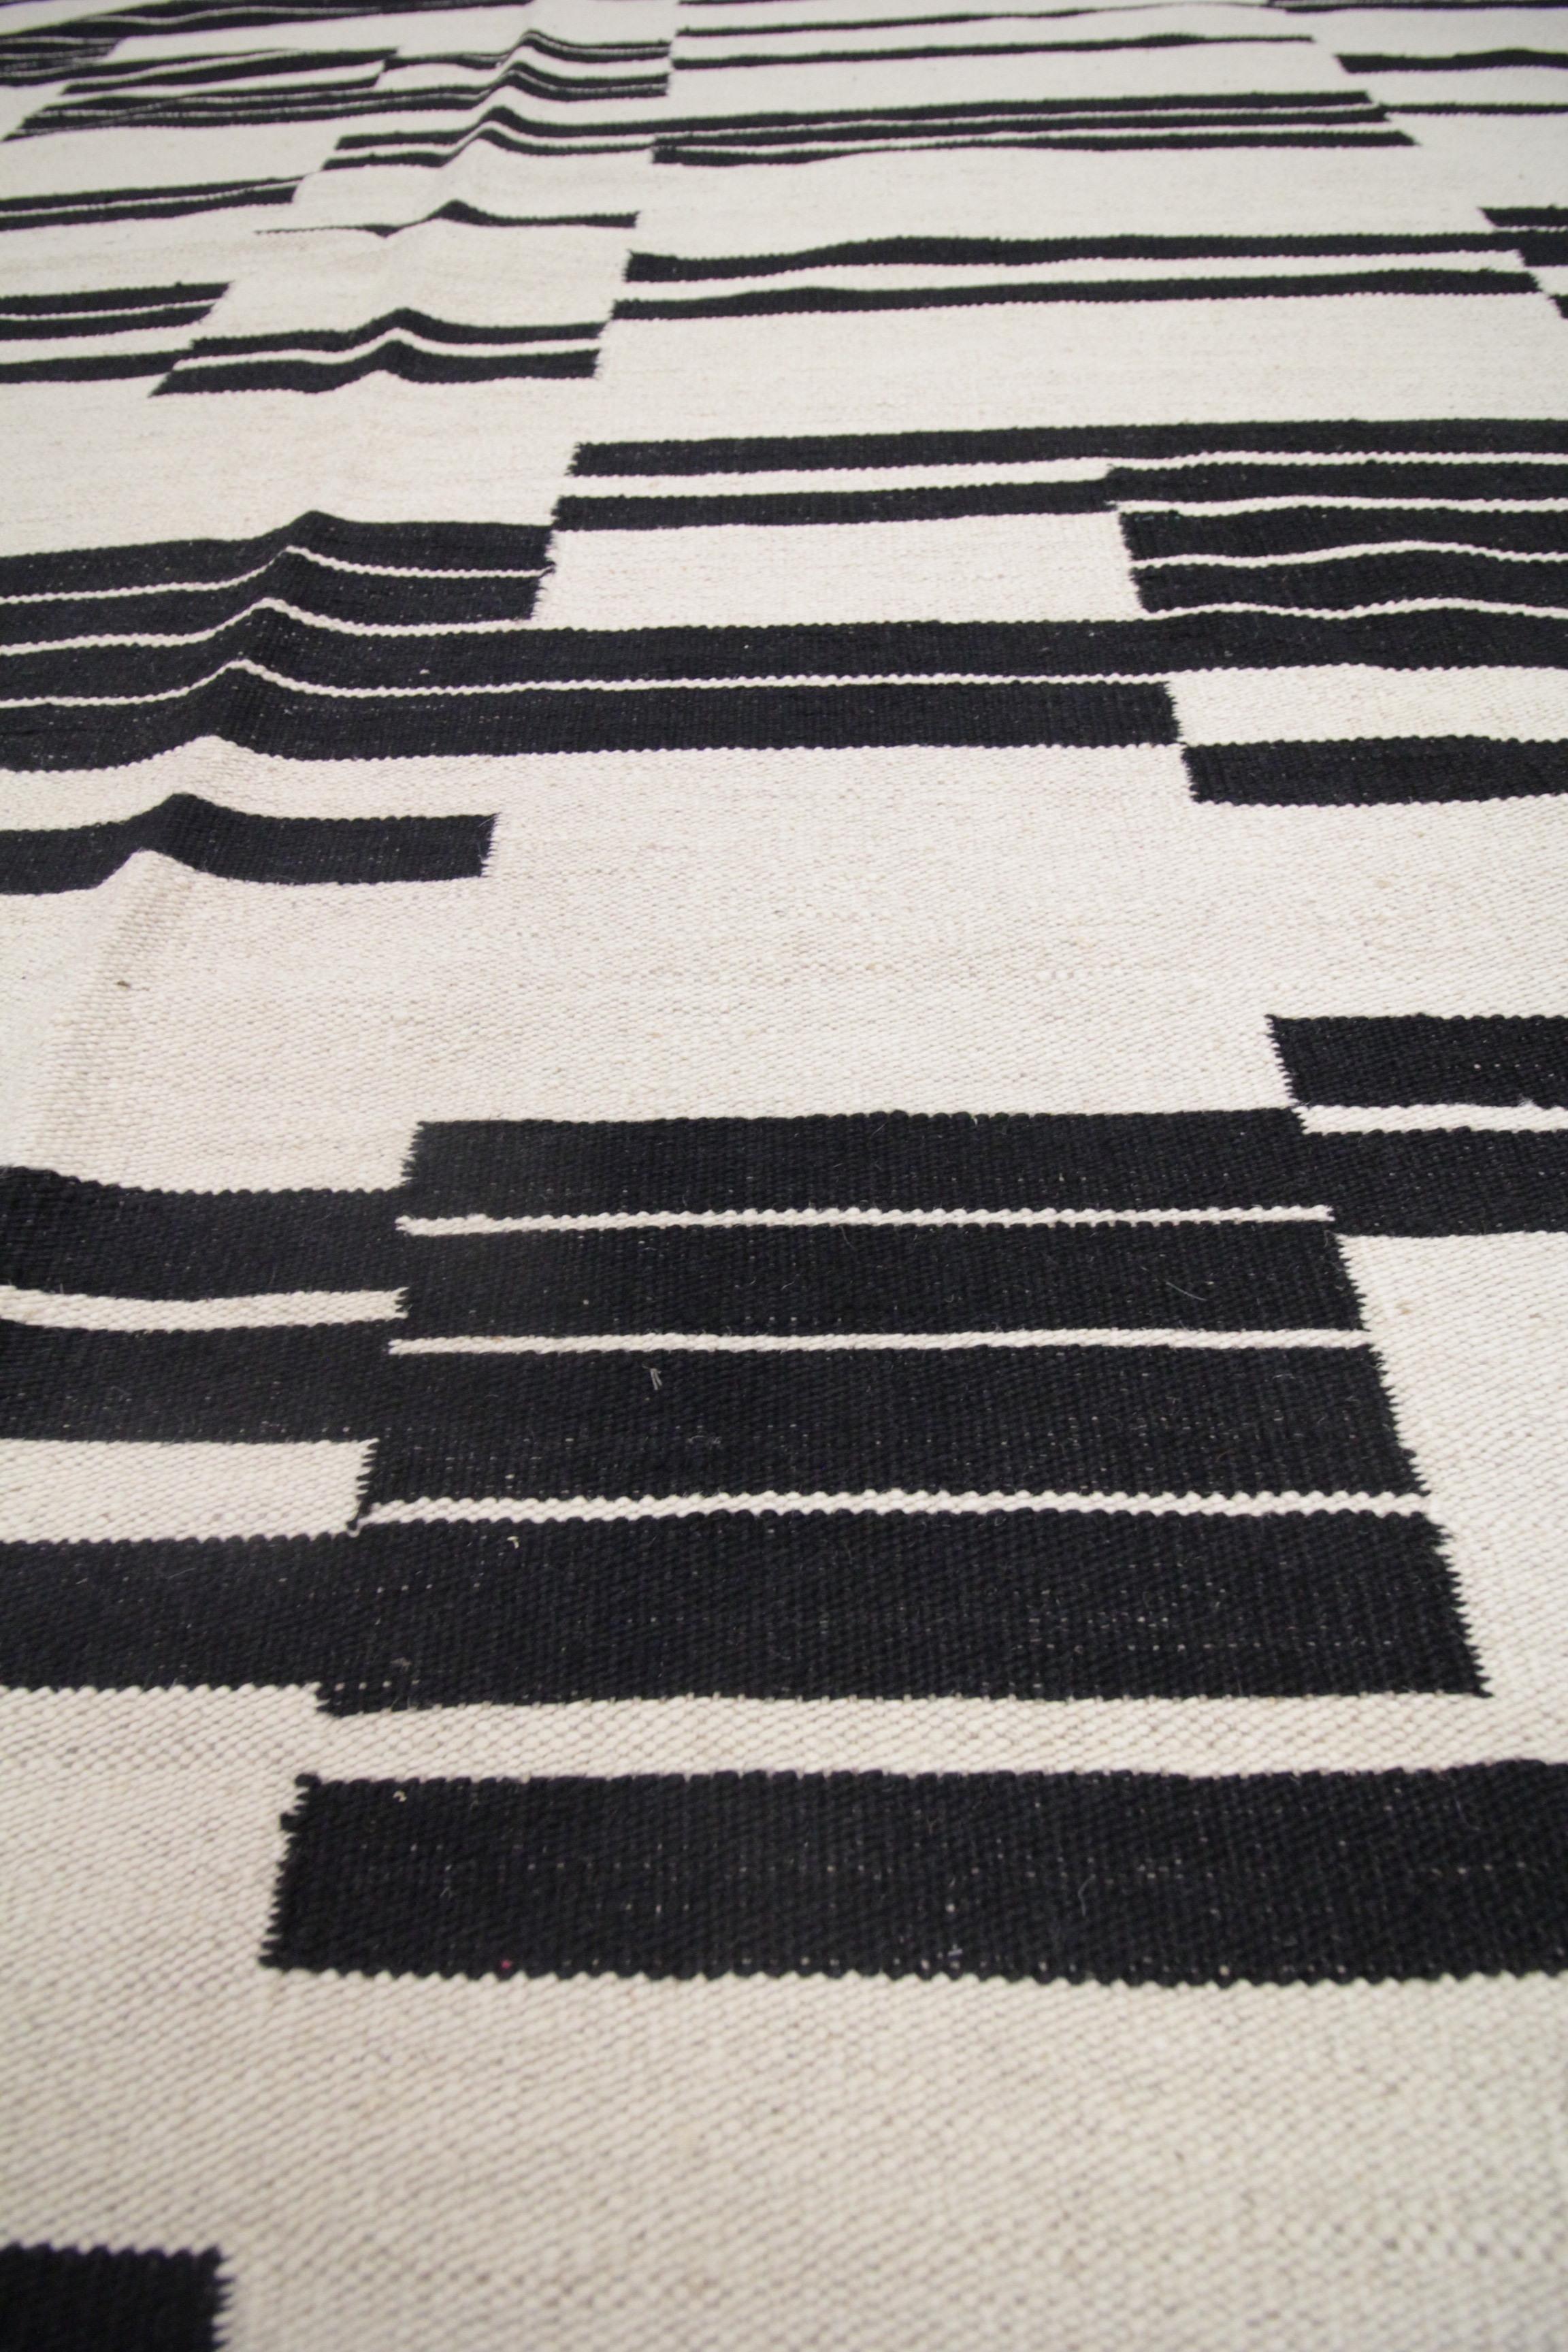 Mid-Century Modern Modern Kilim Rugs, Handmade Carpet Wool Kilim Black Cream Area Rug